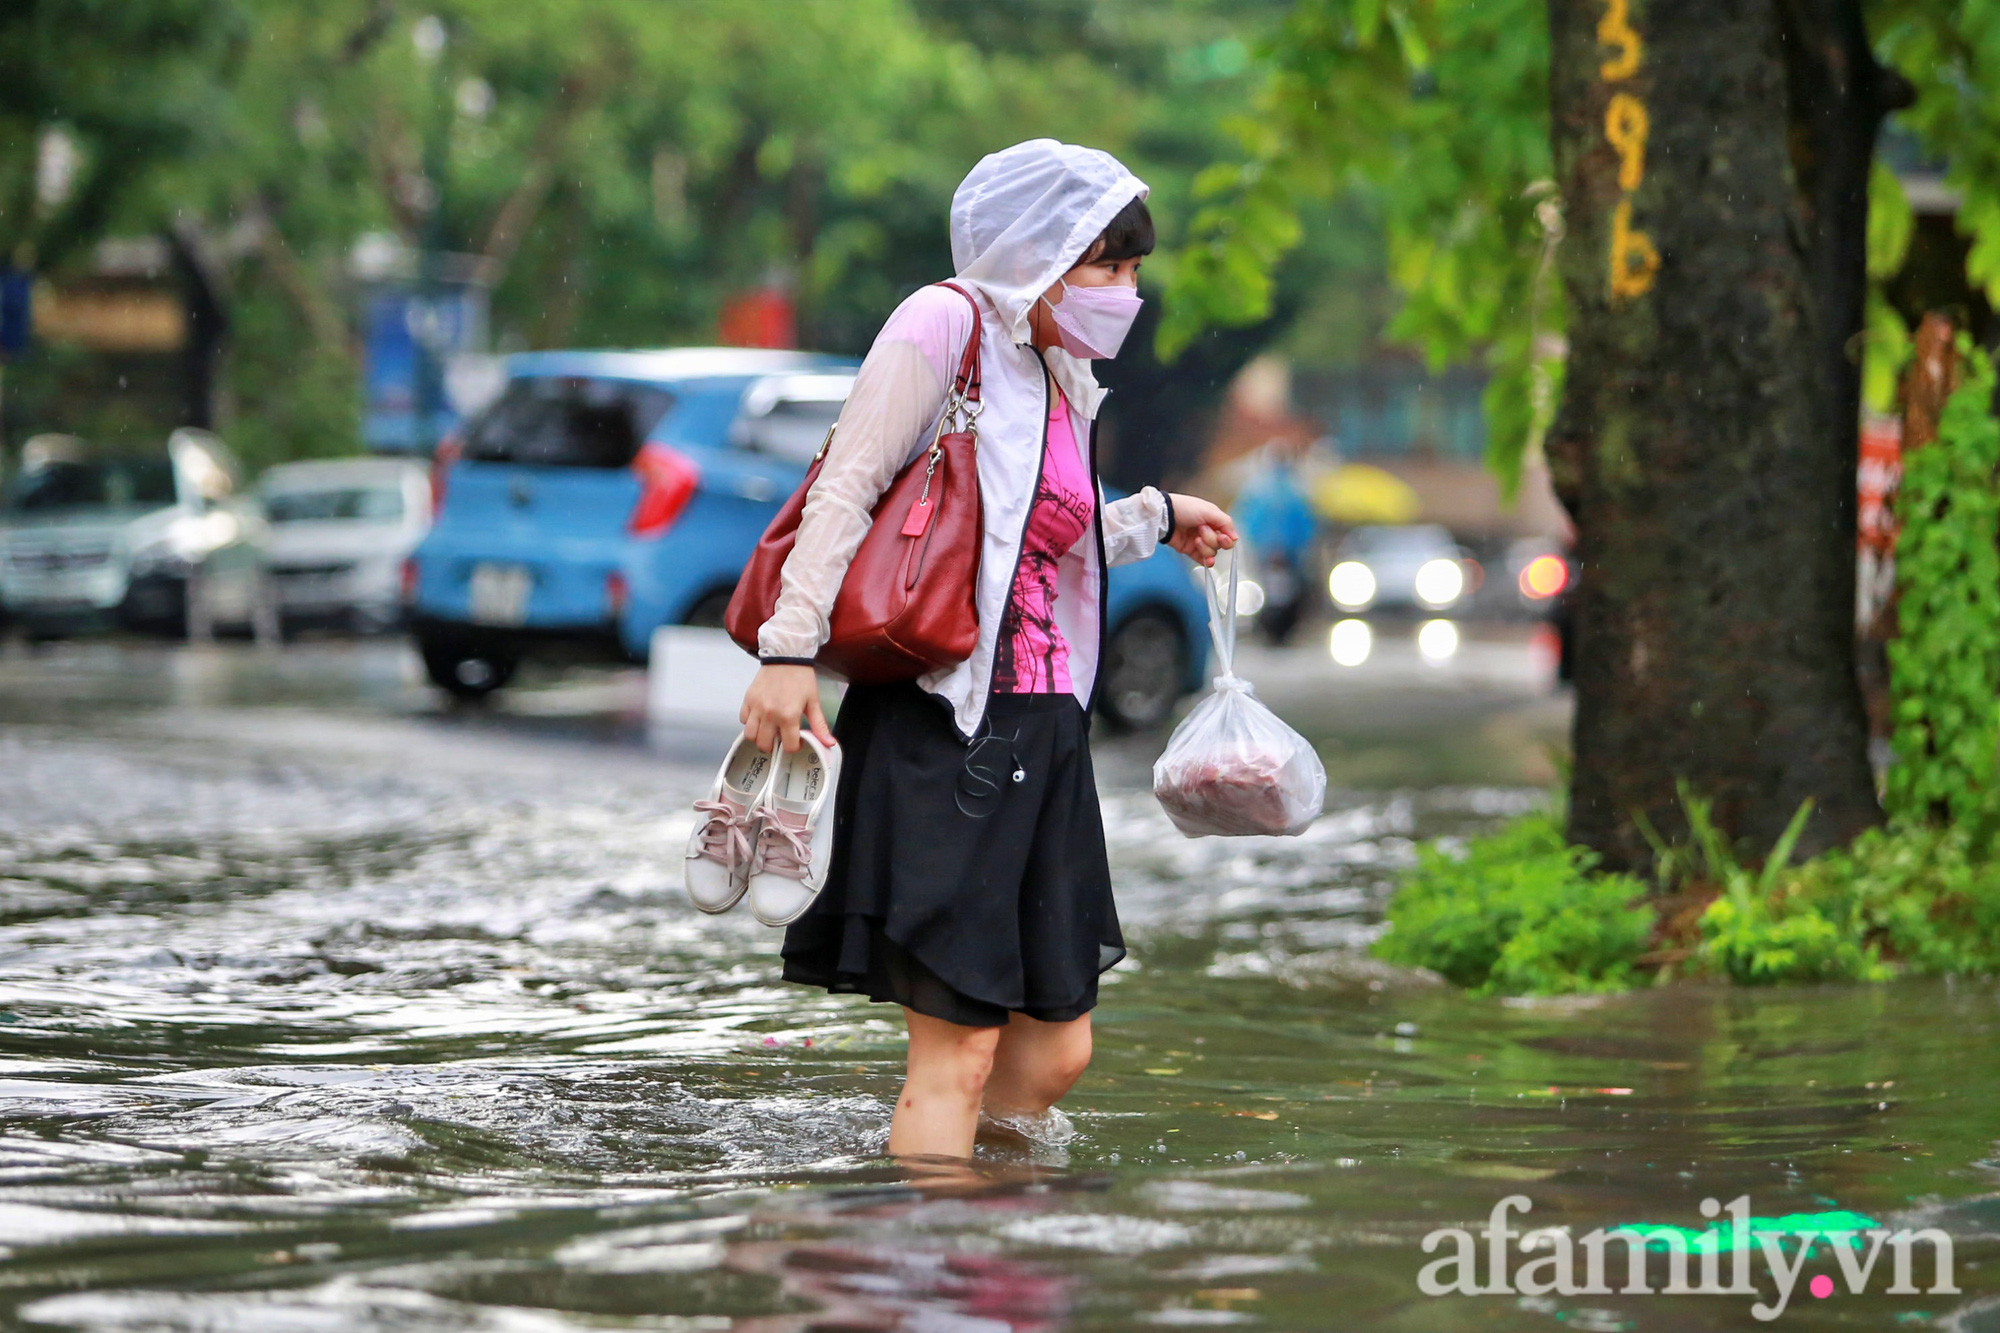 Công nhân môi trường vất vả trong cơn mưa tầm tã ngày giãn cách ở Hà Nội - Ảnh 13.